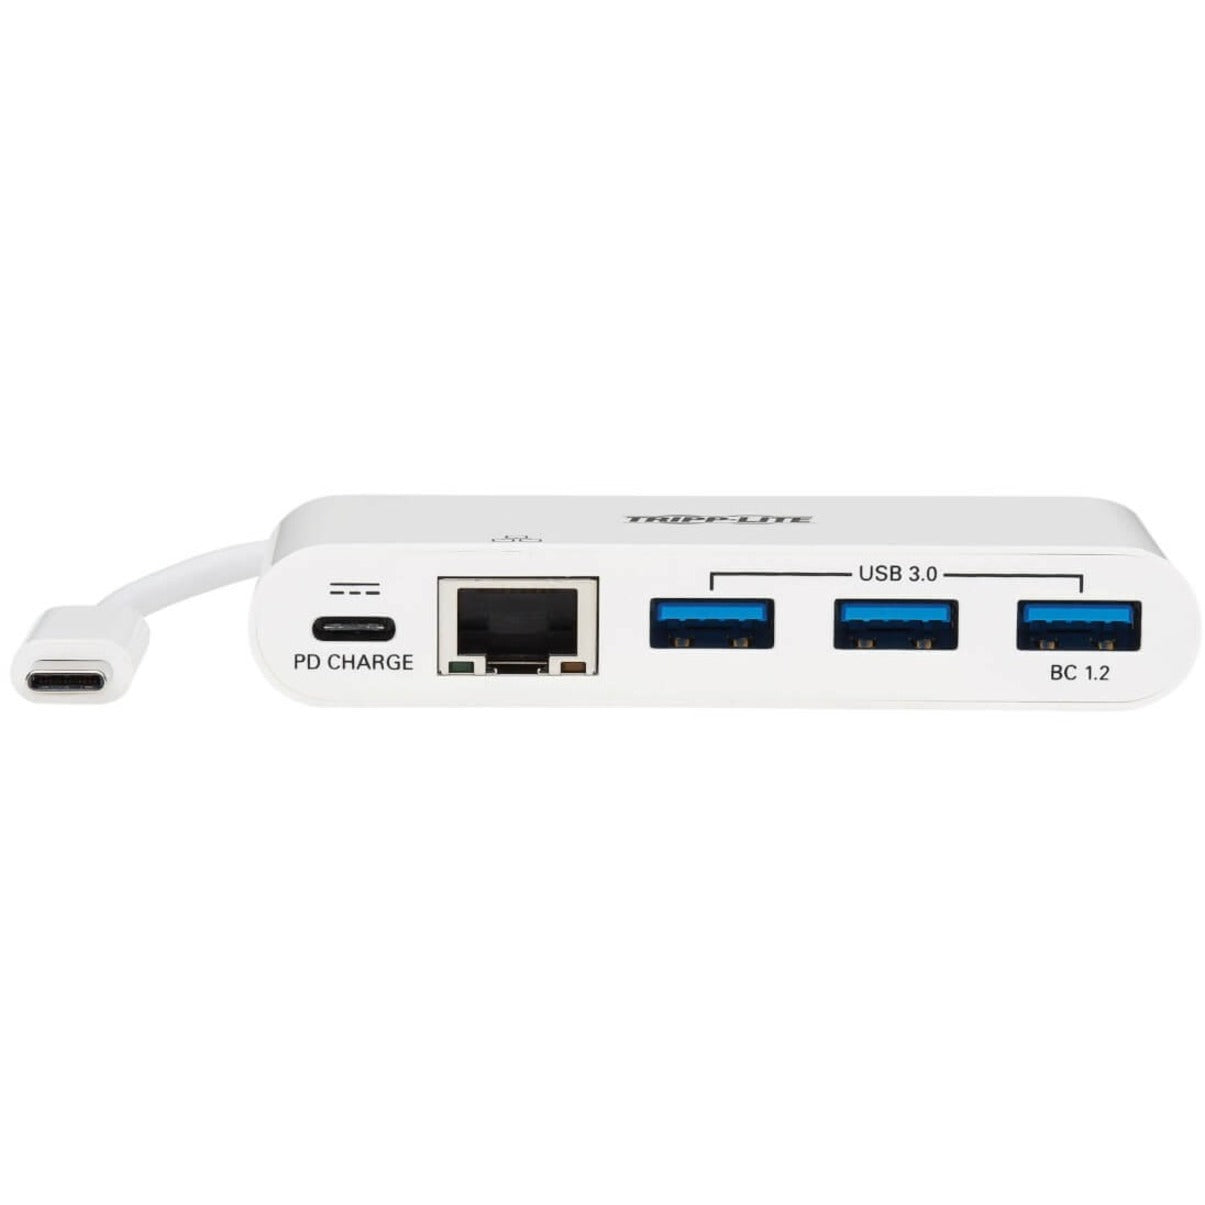 Tripp Lite U460-003-3AG-C USB 3.1 Gen 1 USB-C Portable Hub/Adapter 3-Port USB 3.0 Ports 1 Network Port  Tripp Lite U460-003-3AG-C USB 3.1 Gen 1 USB-C ポータブルハブ/アダプター、3 ポート USB 3.0 ポート、1 ネットワークポート